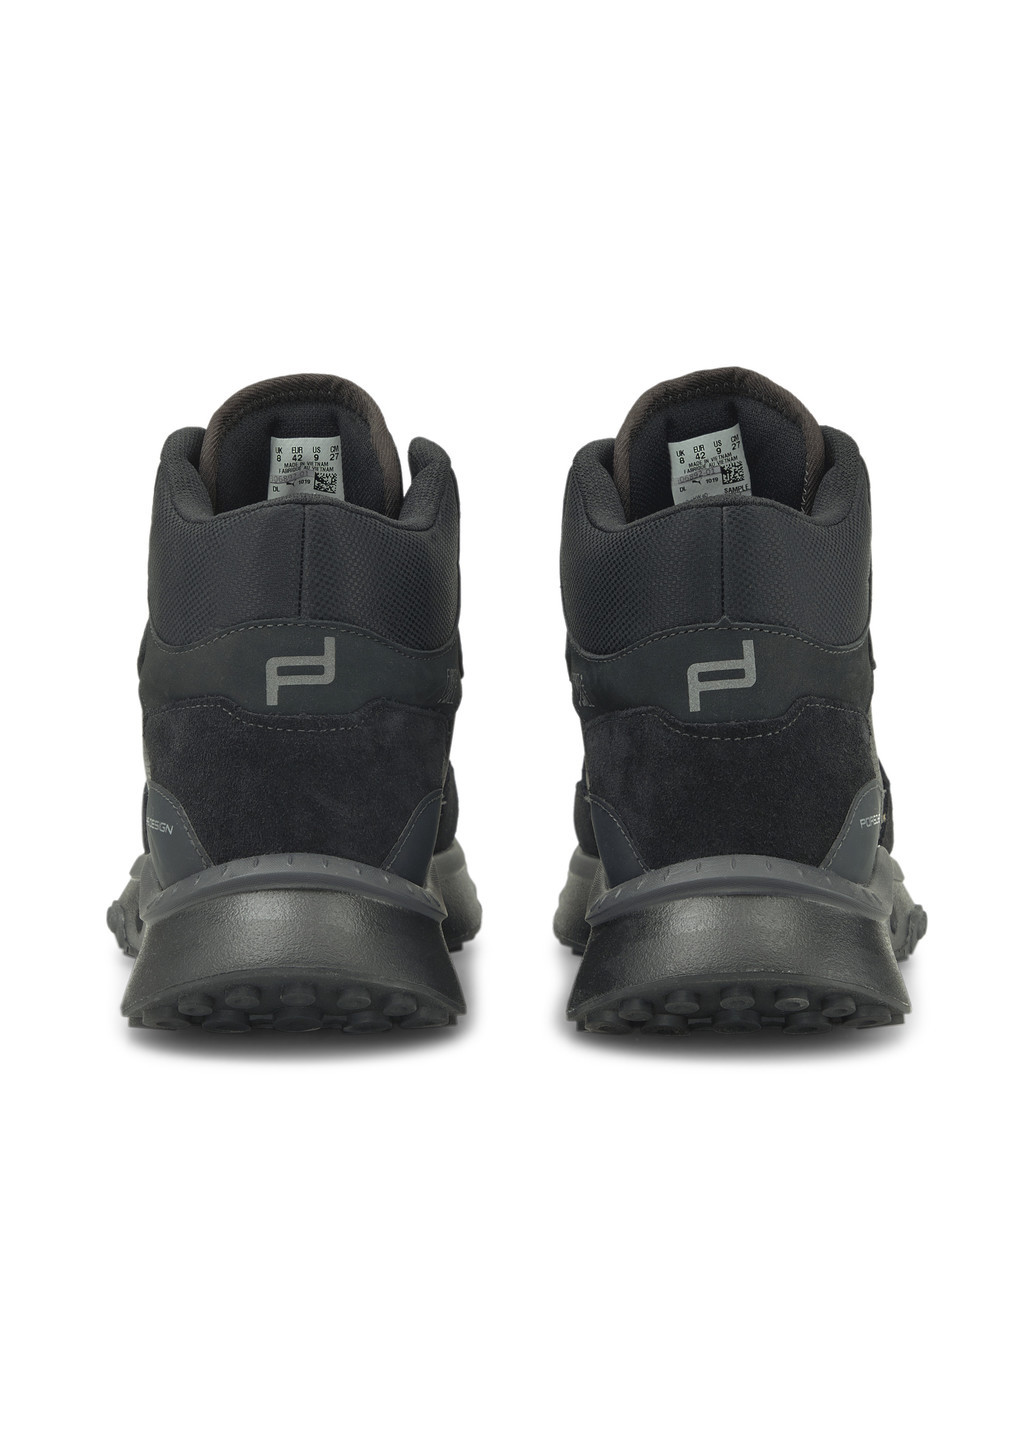 Черные всесезонные кроссовки x first mile porsche design wild rider winterised men's motorsport shoes Puma